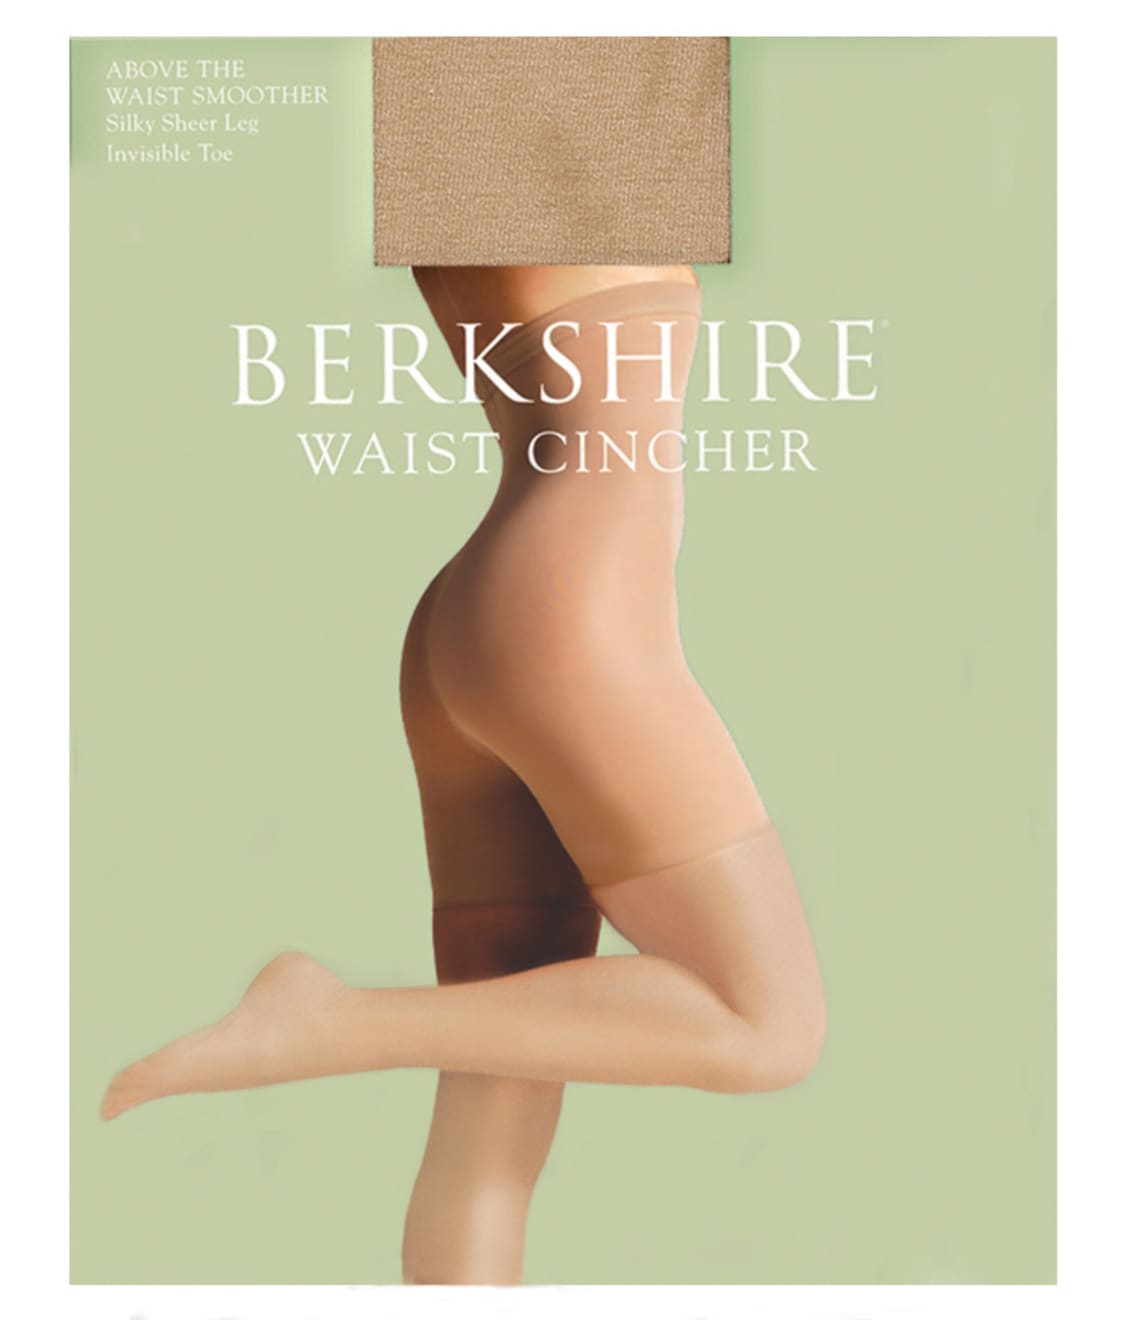 Berkshire High-Waist Cincher Pantyhose & Reviews